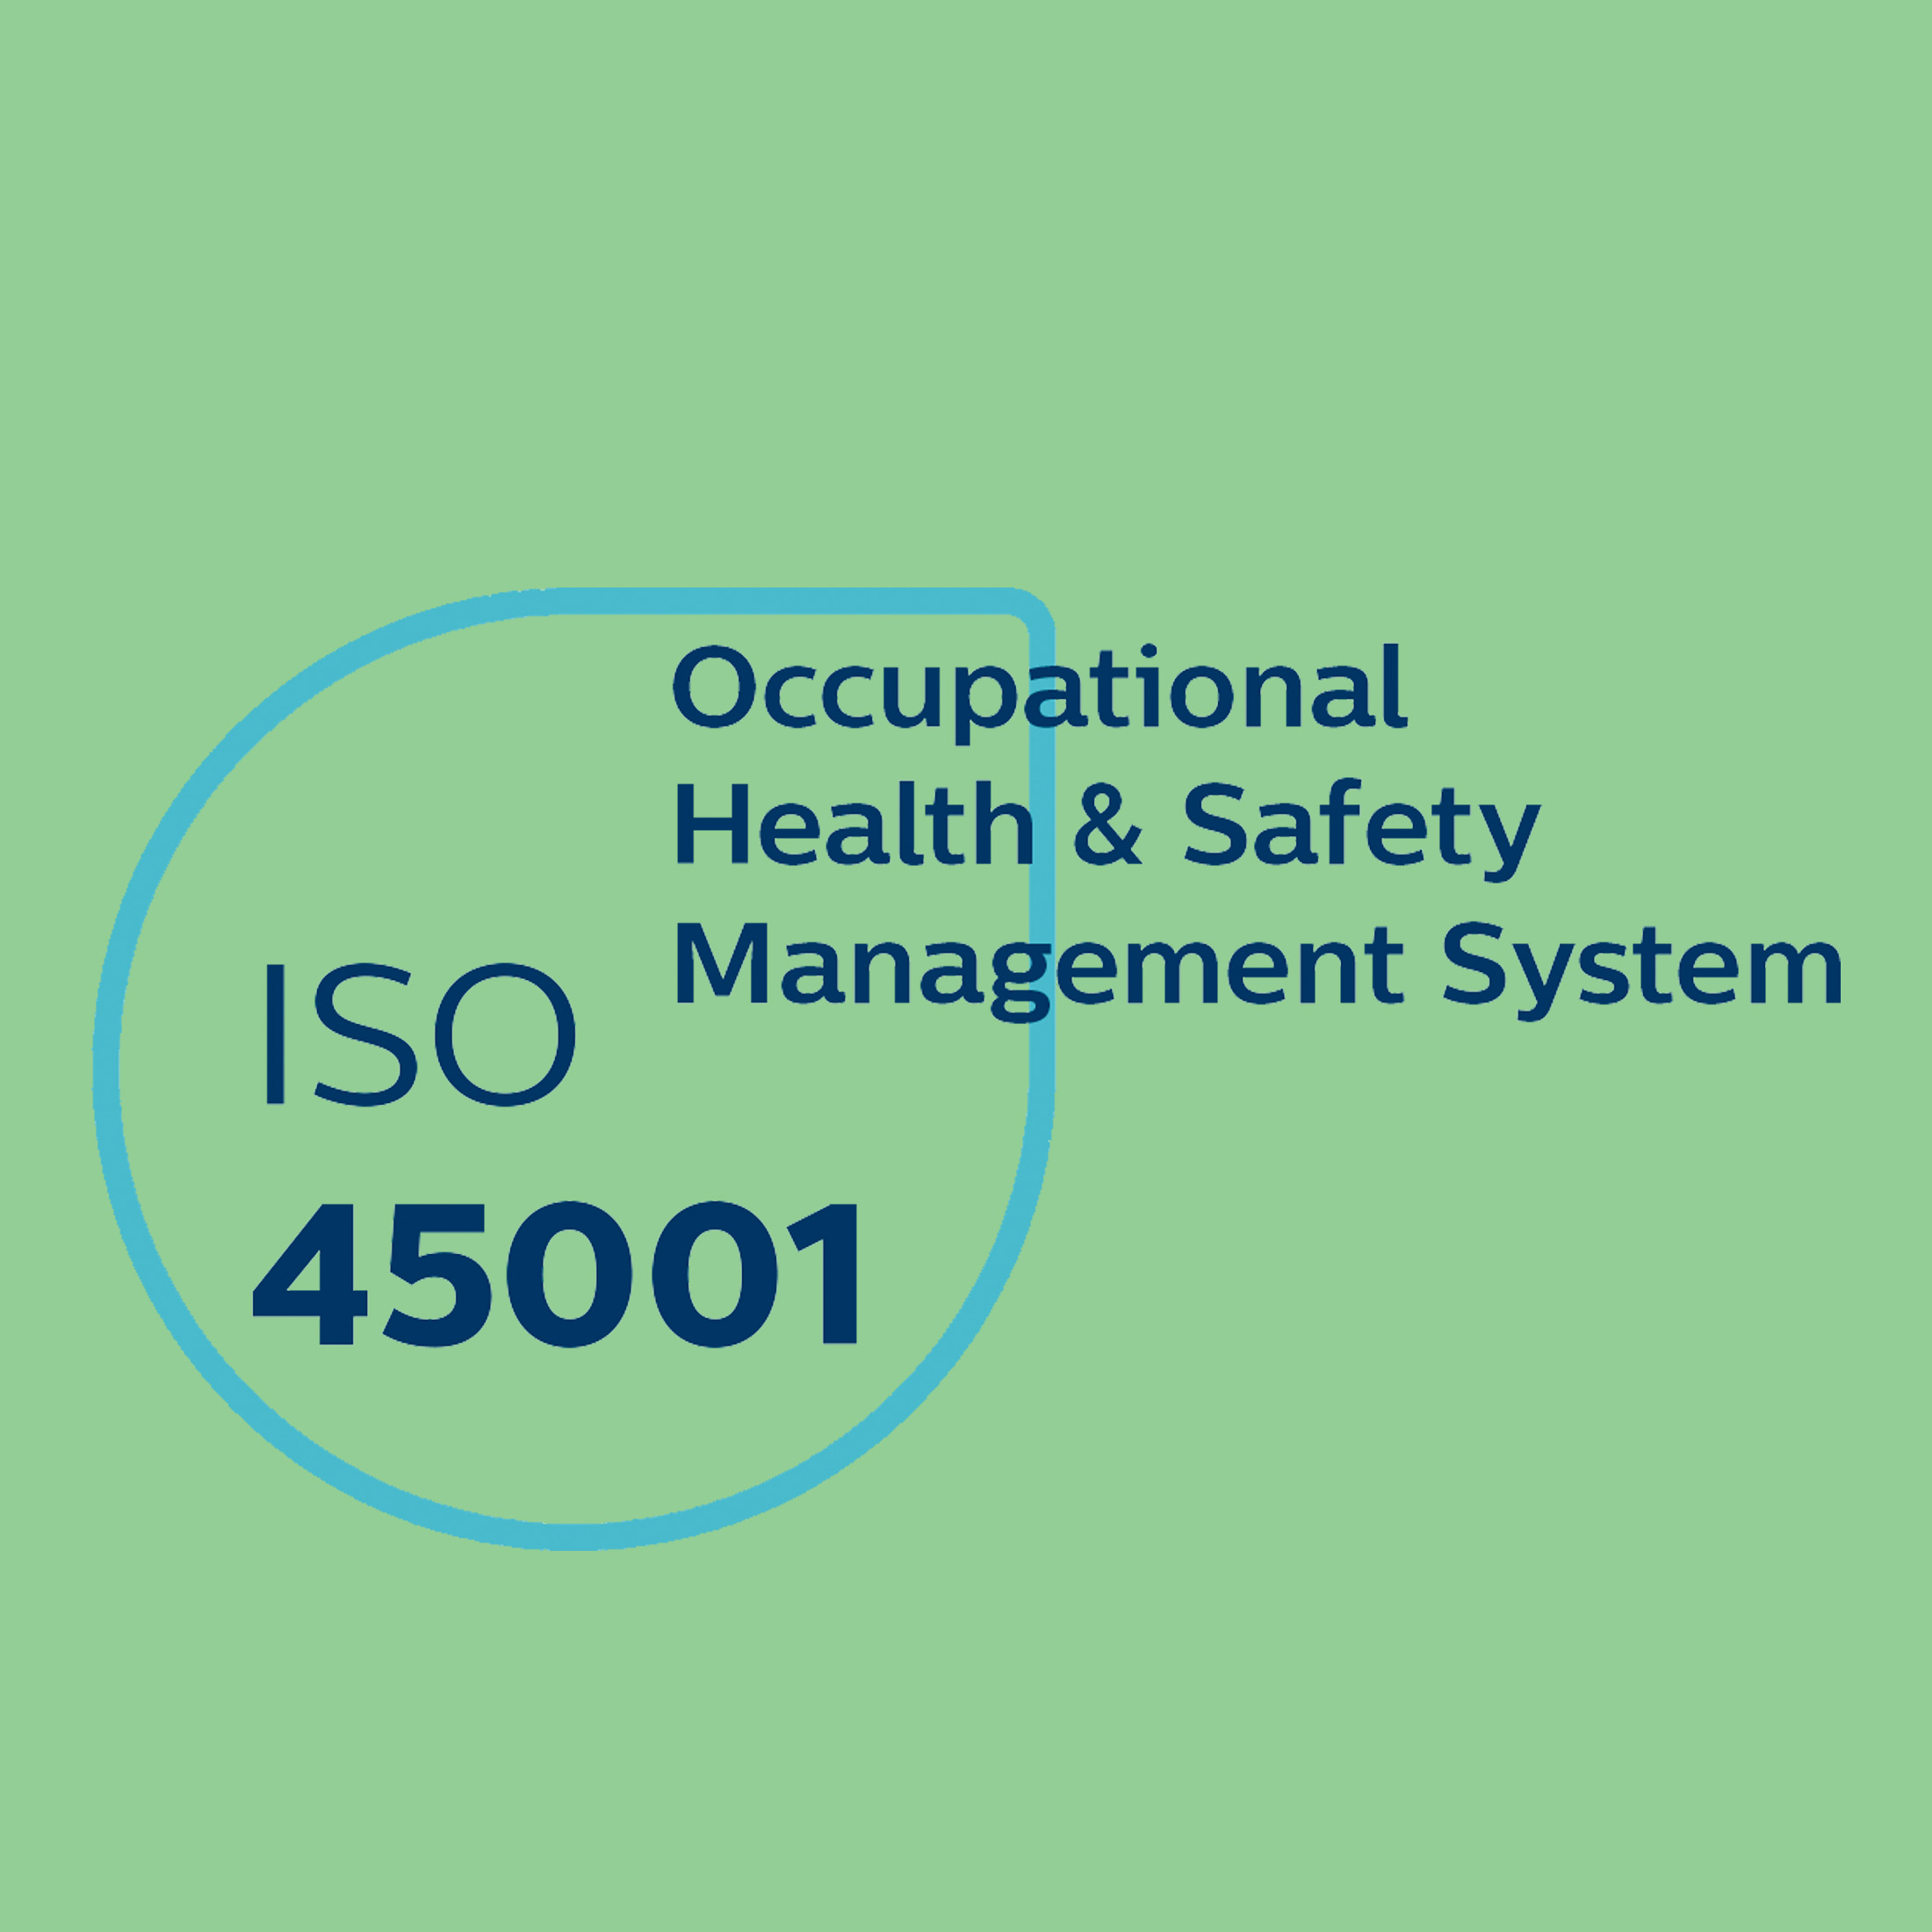 Benefits of ISO 45001:2018